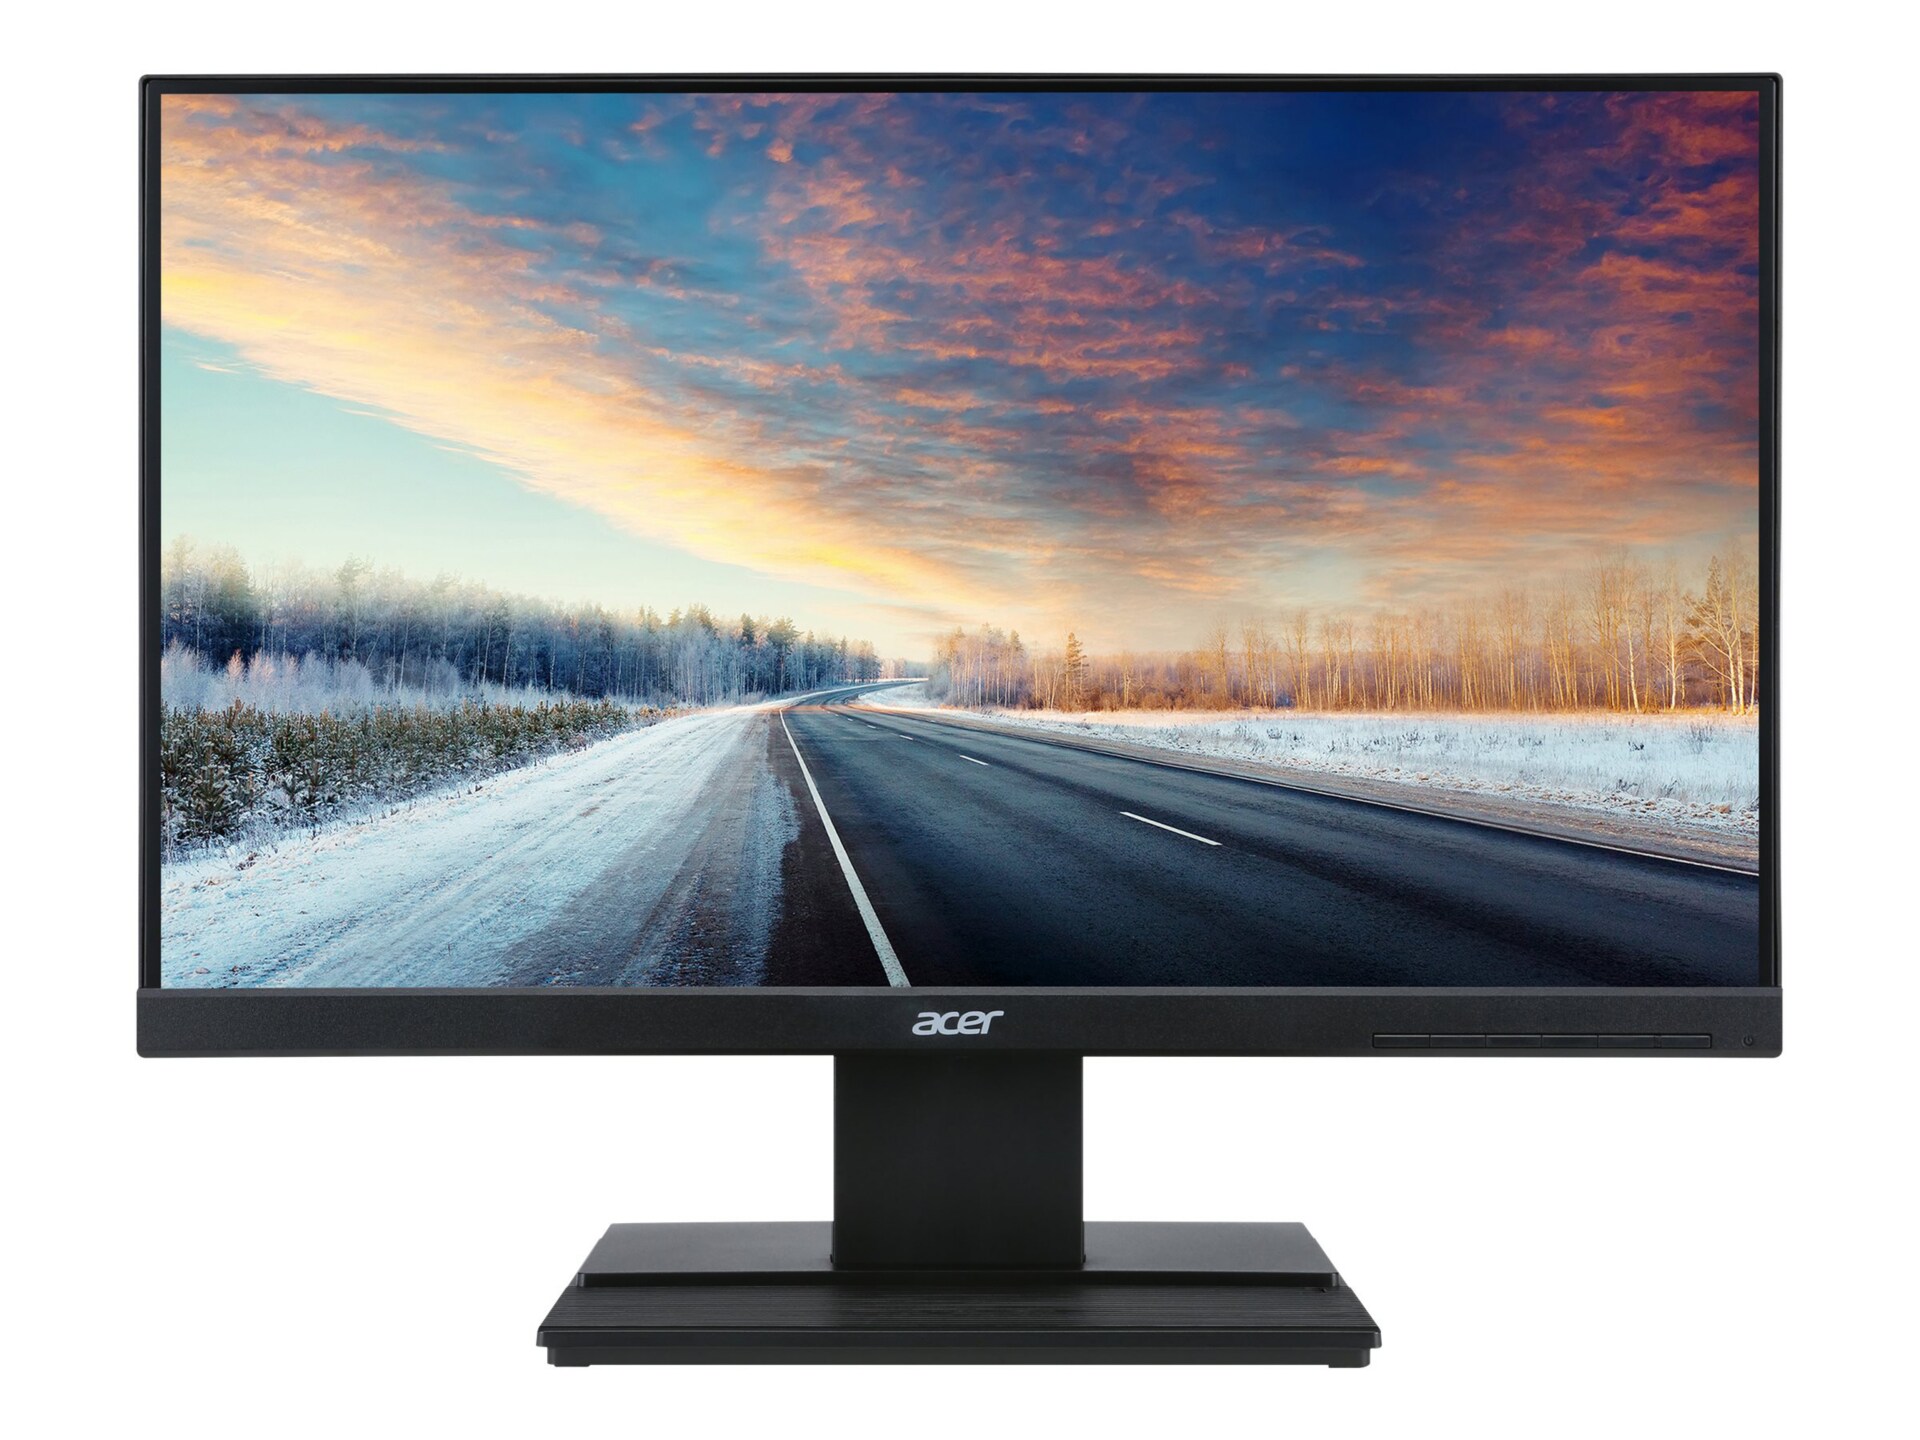 Acer V226HQL - LED monitor - Full HD (1080p) - 21.5"